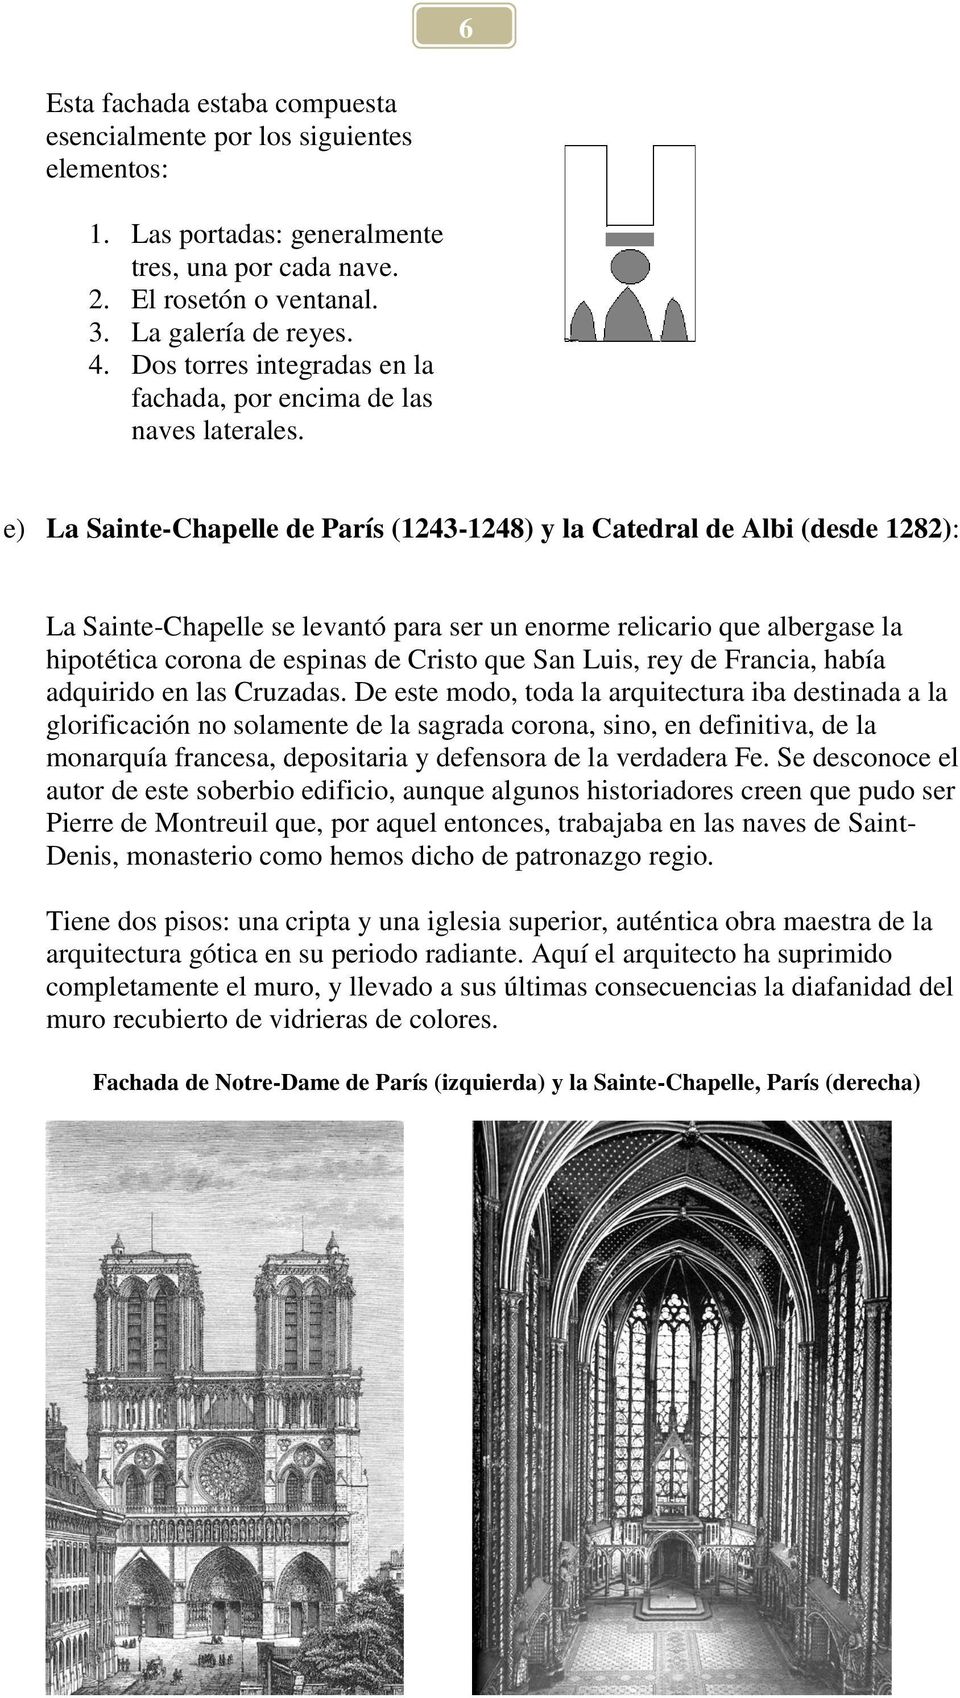 e) La Sainte-Chapelle de París (1243-1248) y la Catedral de Albi (desde 1282): La Sainte-Chapelle se levantó para ser un enorme relicario que albergase la hipotética corona de espinas de Cristo que